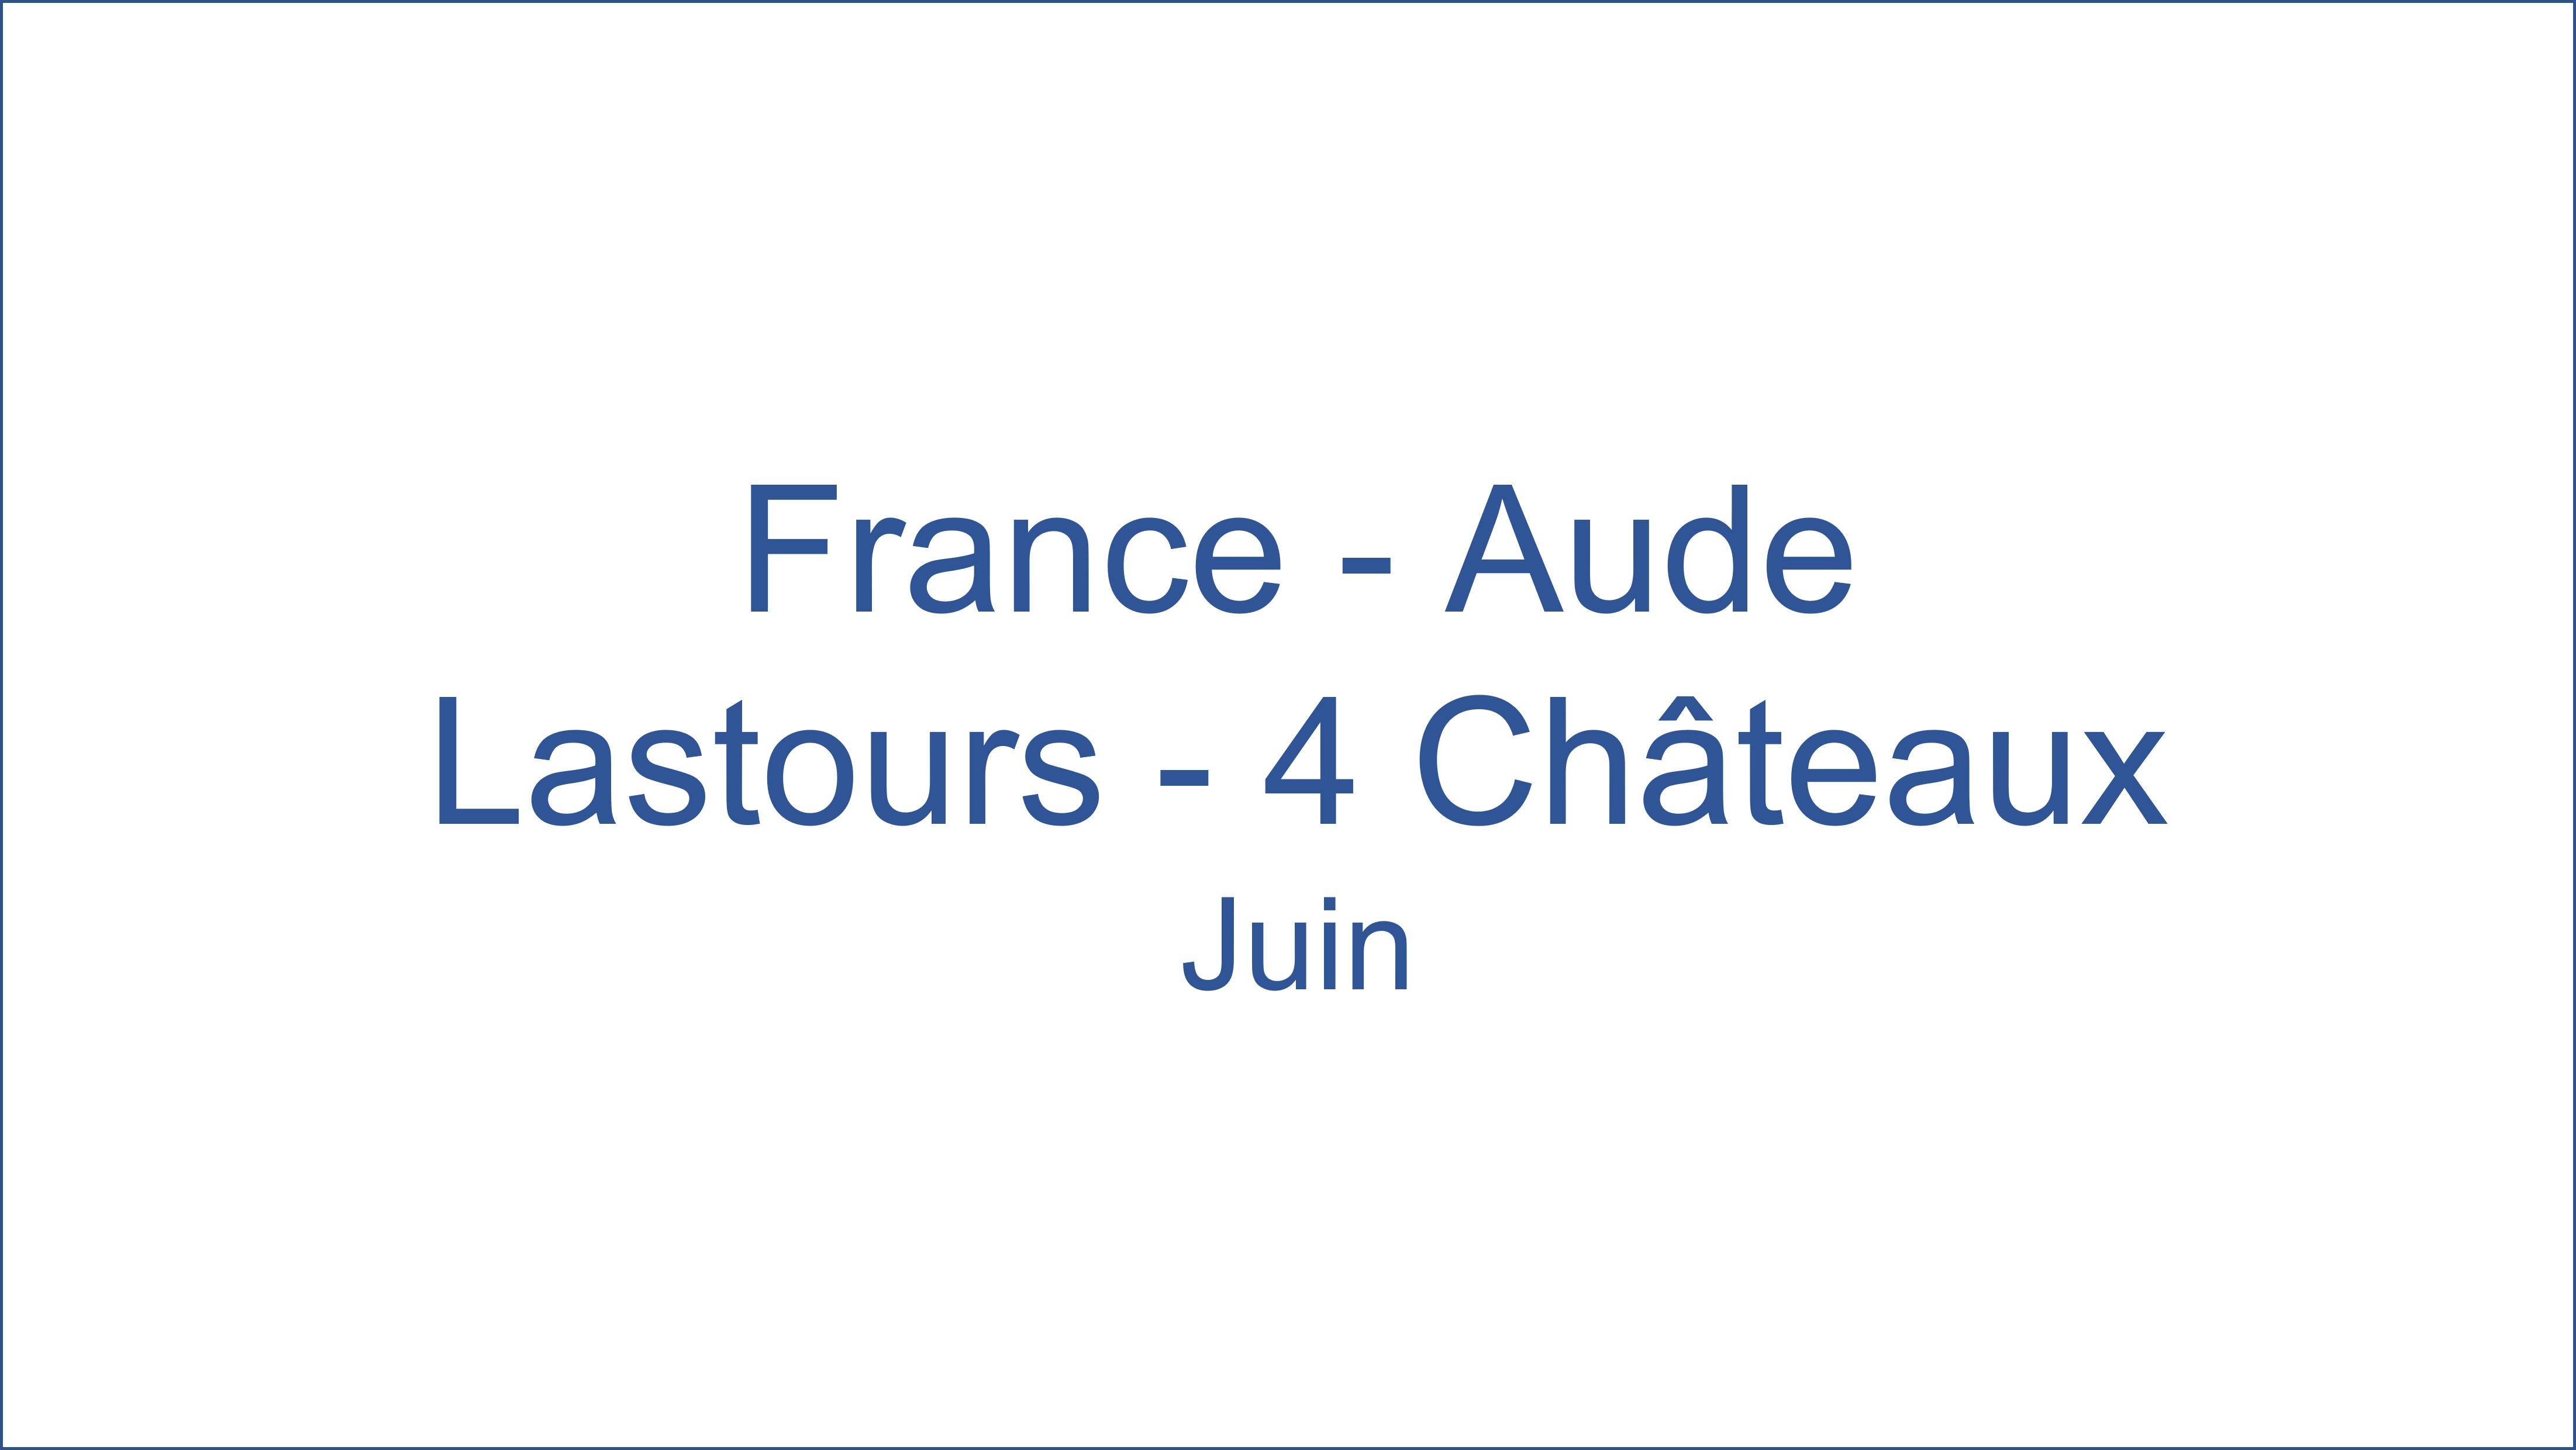 France � Aude Lastours - 4 Ch�teaux Juin 06/2021